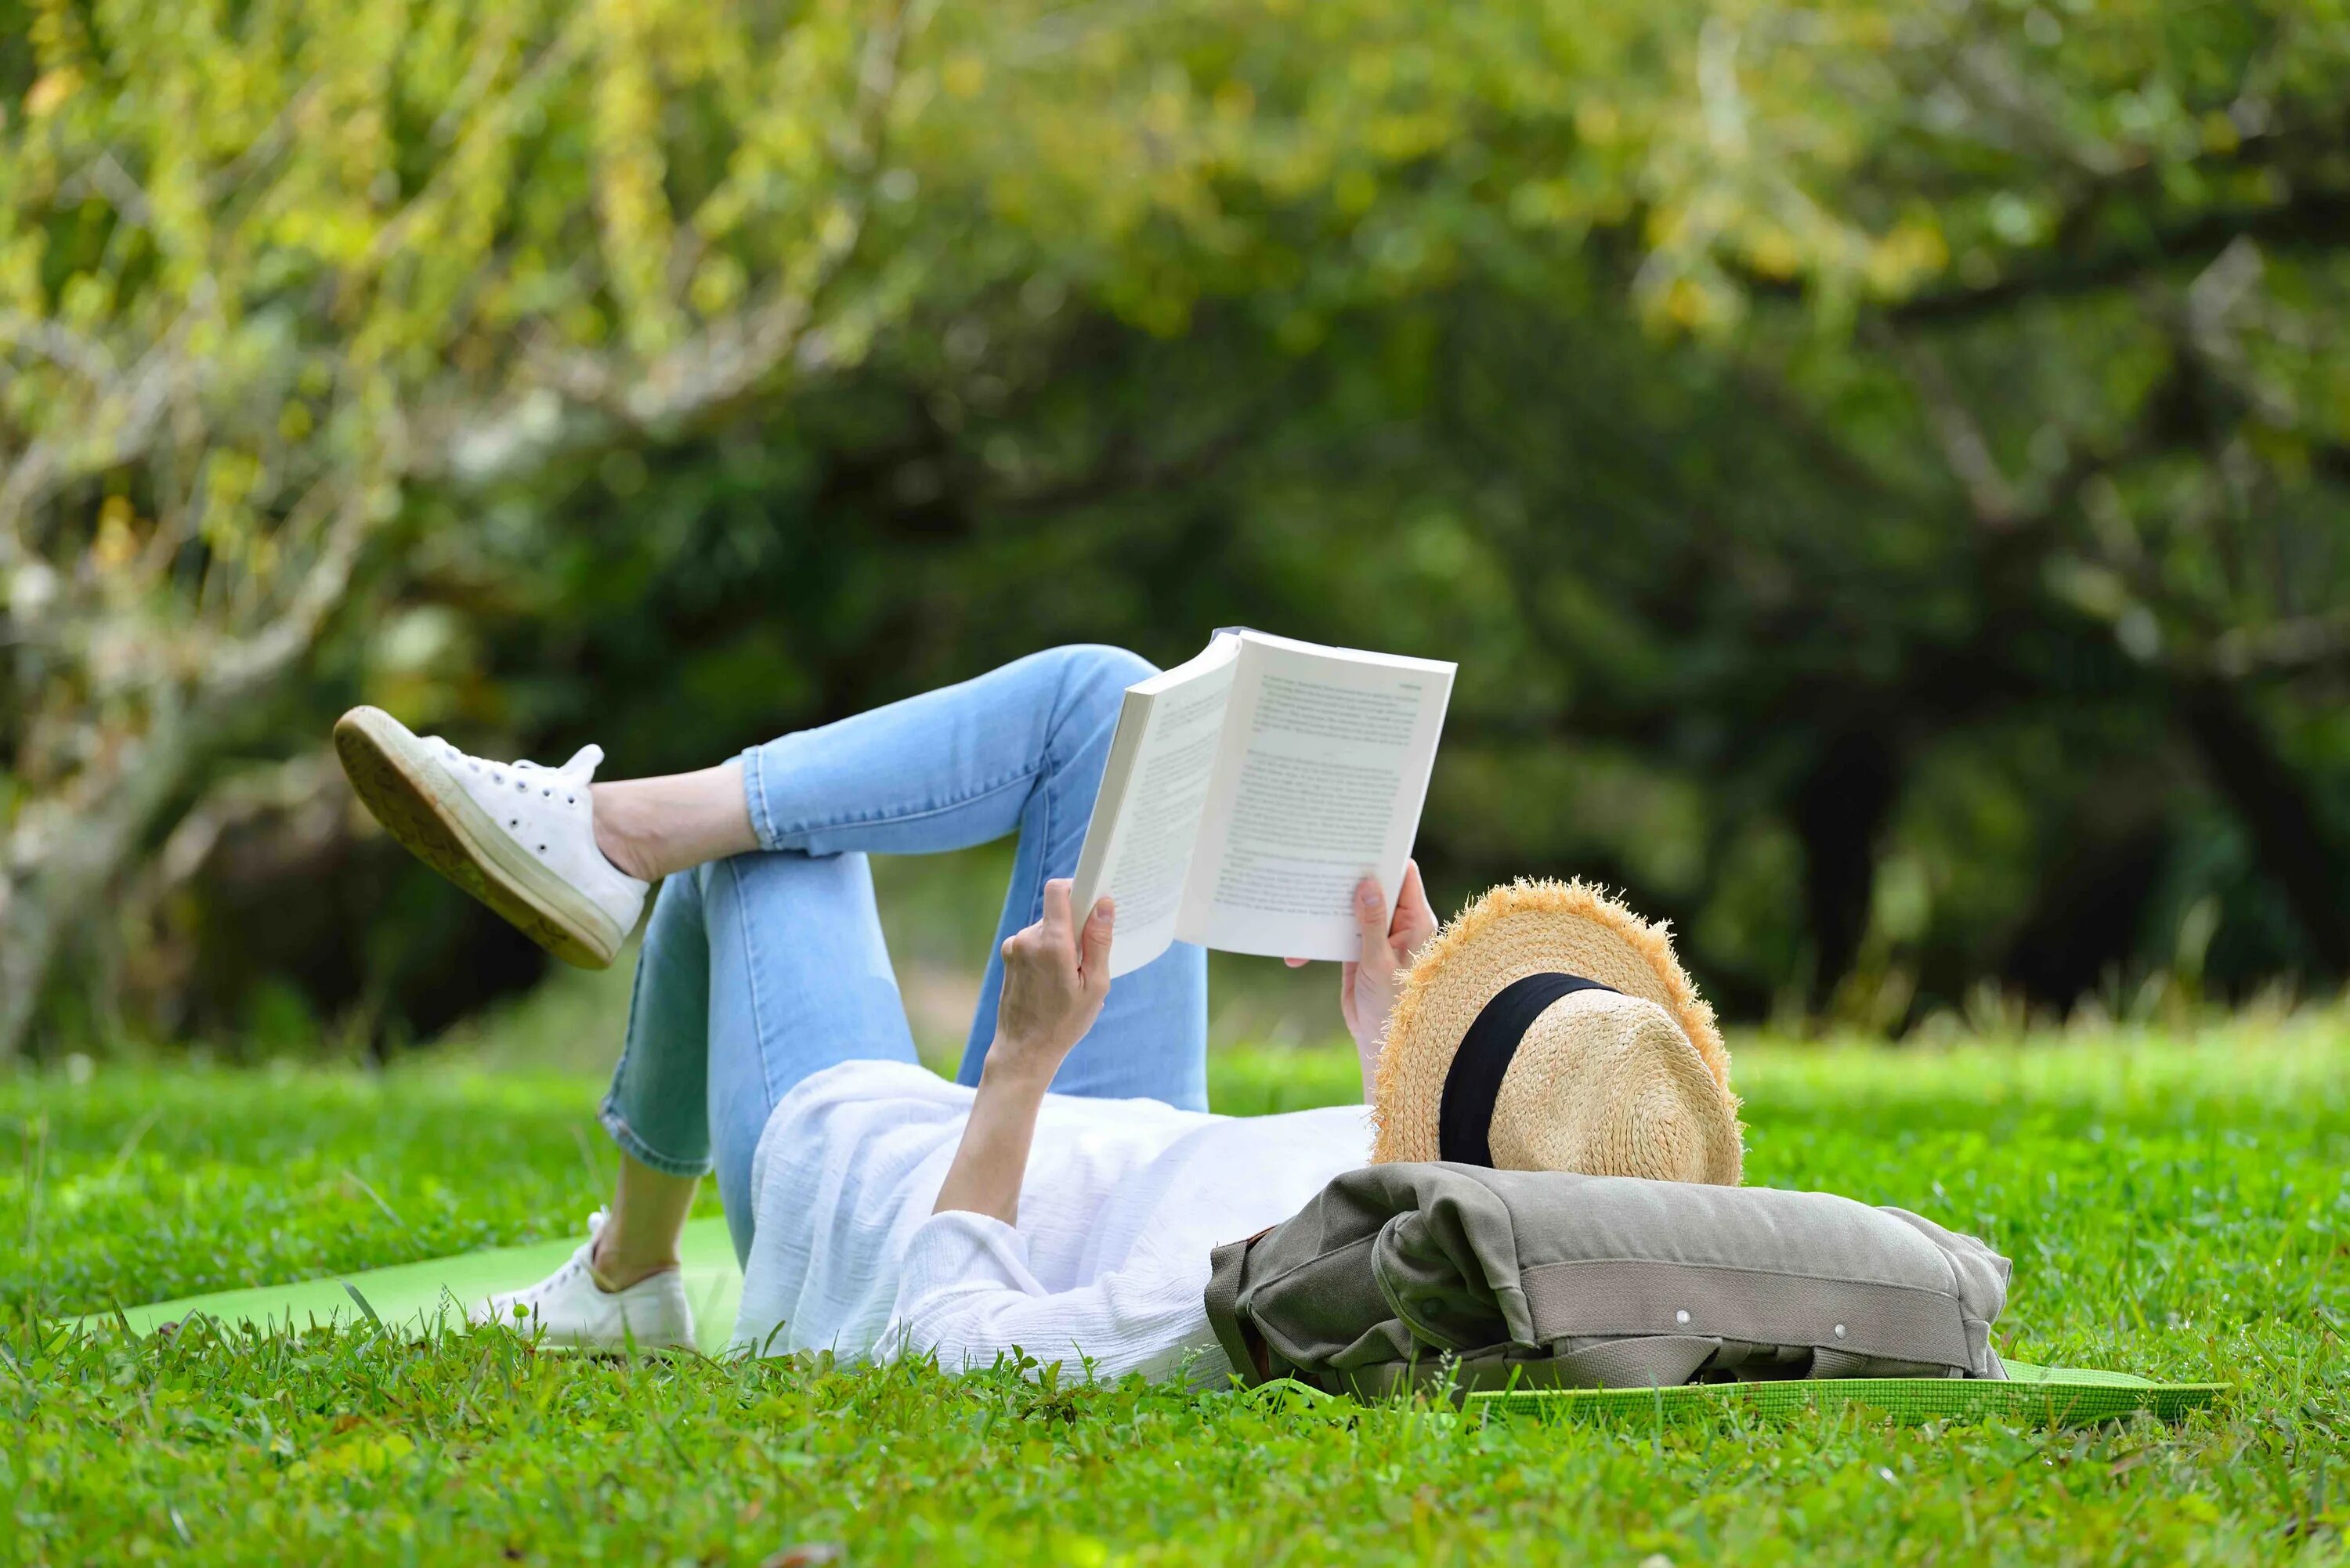 Reading on property. Люди на траве в парке. Чтение в парке. Лето с книгой. С книжкой на лужайке.